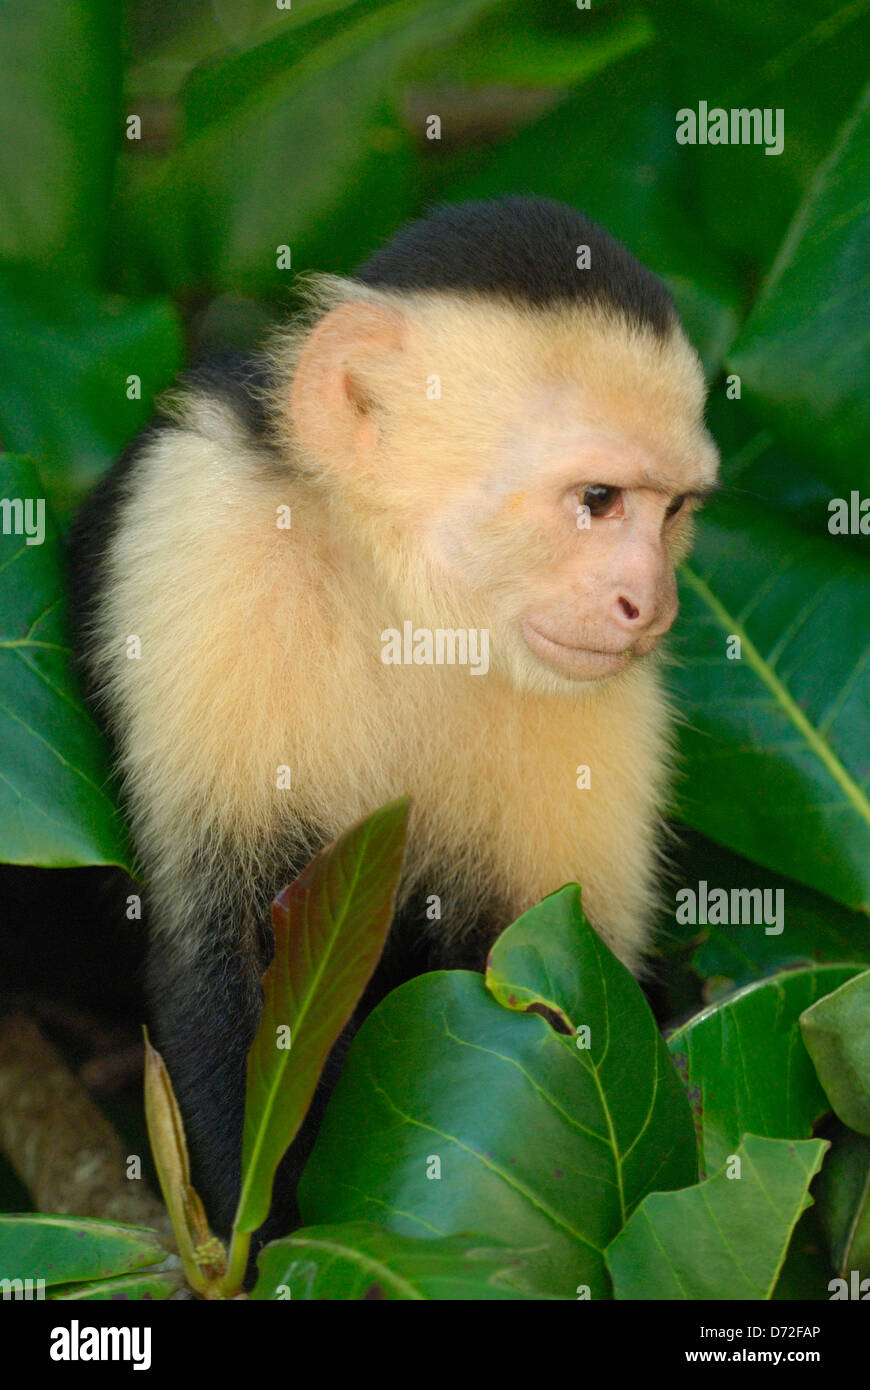 White-headed Capuchin (Cebus capucinus) in Costa Rica rainforest Stock Photo